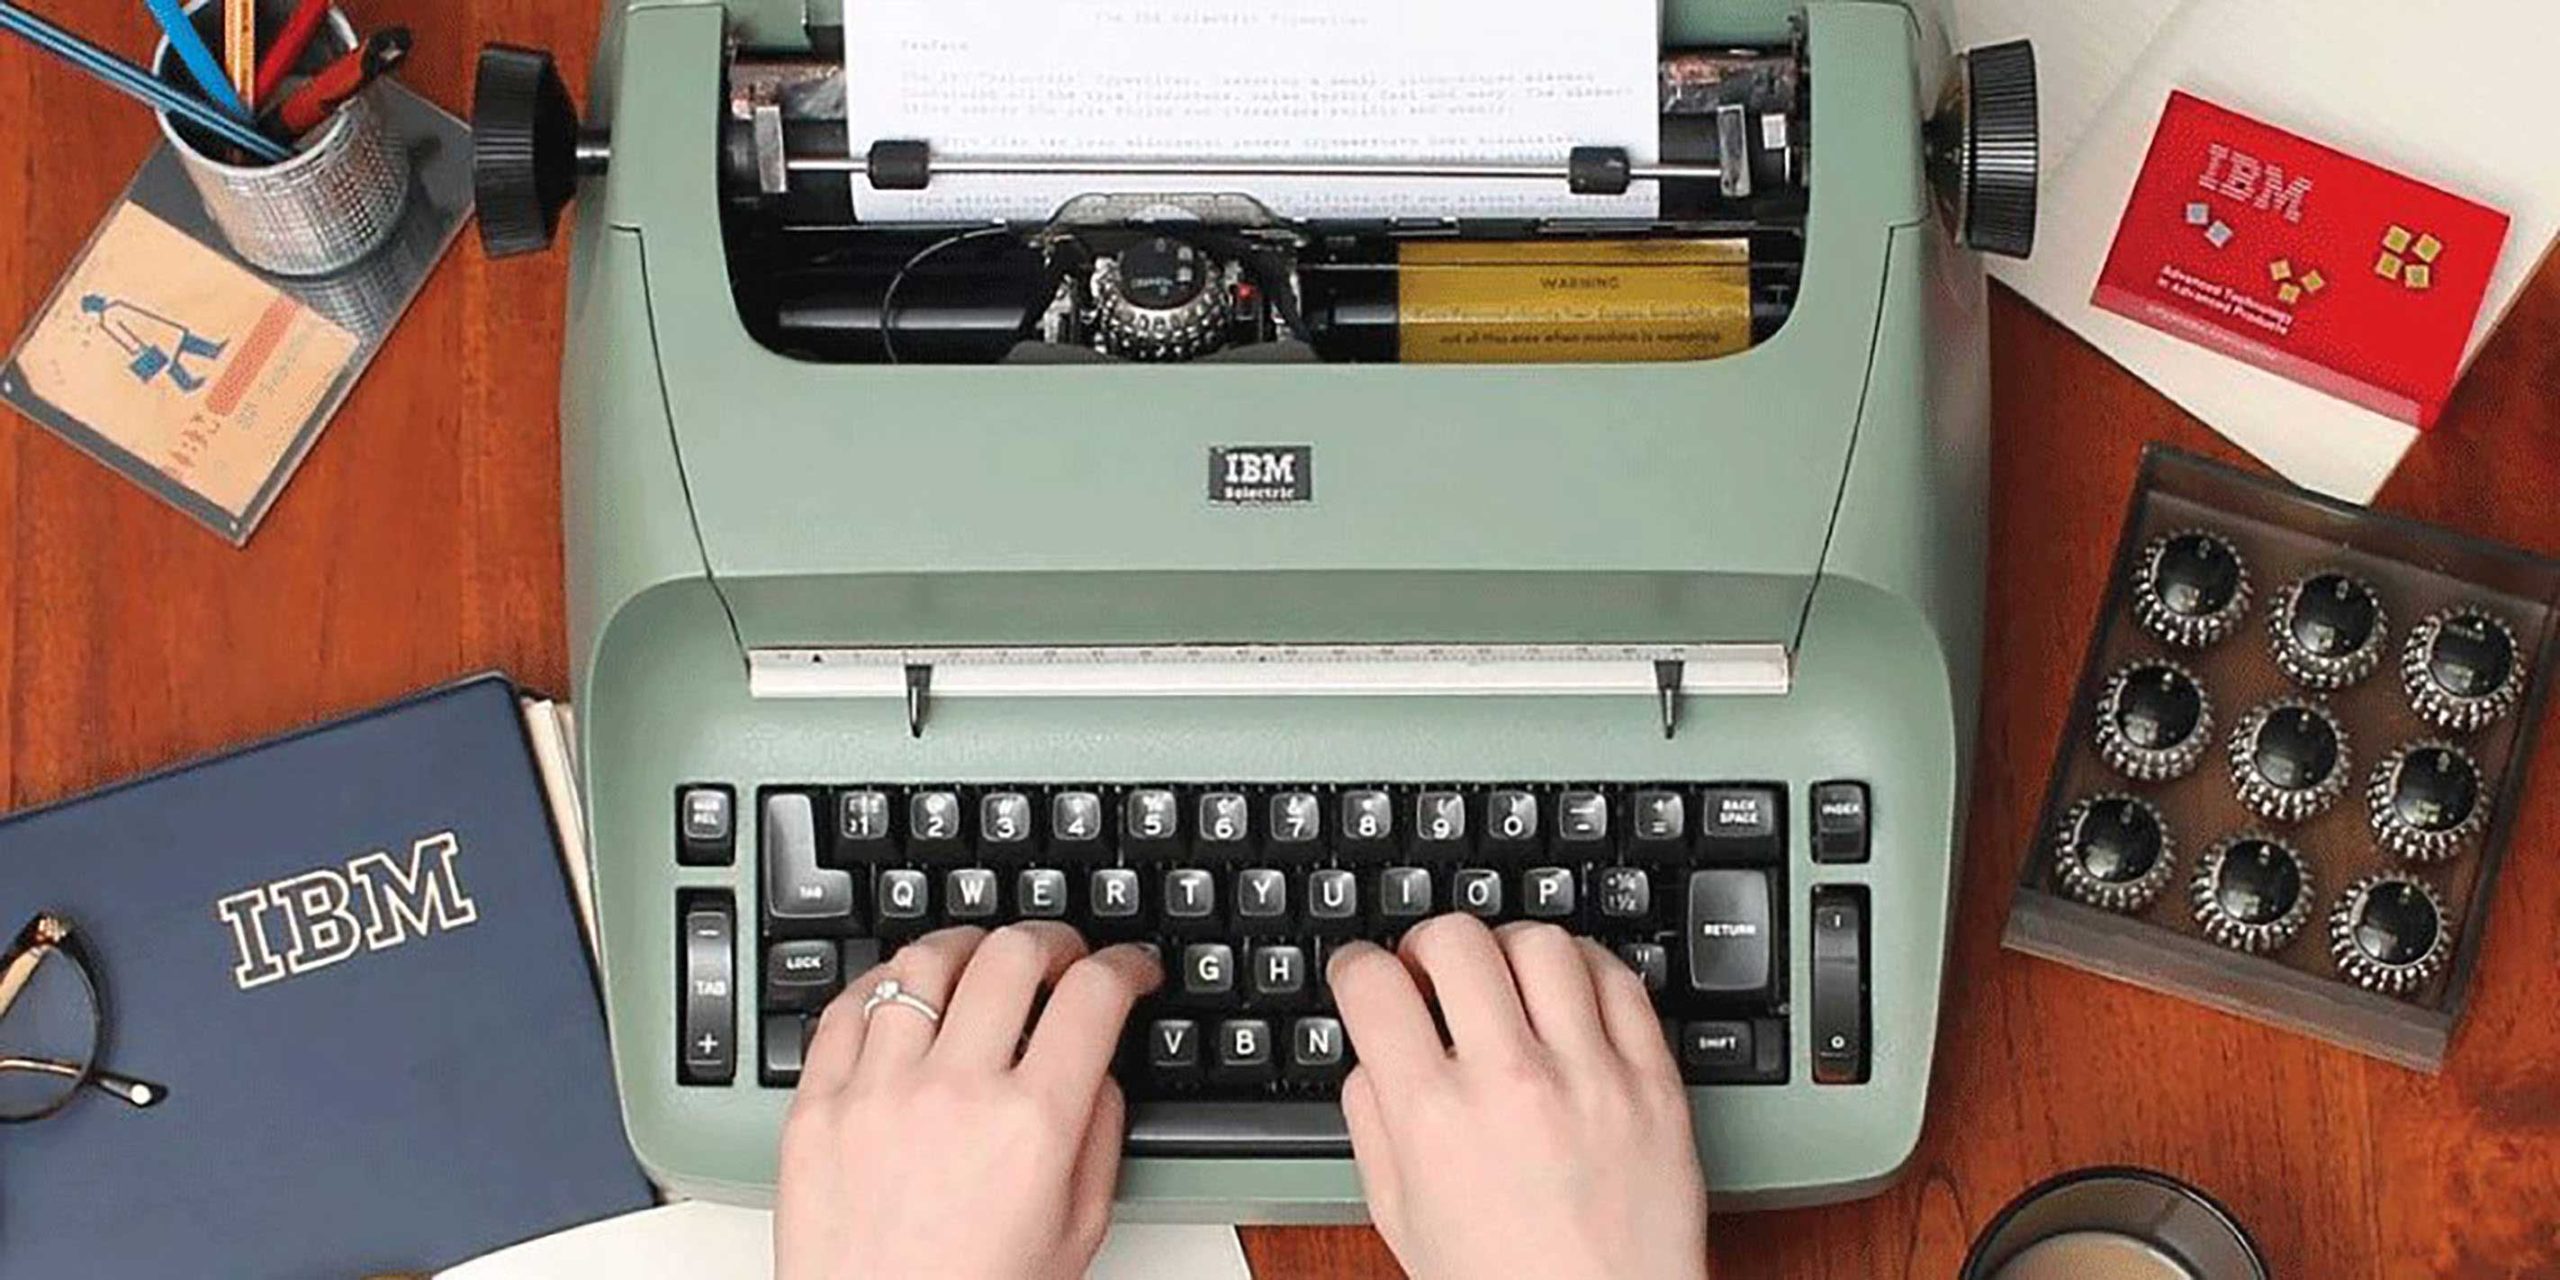 IBM’s Selecric electric typewriter in 1961